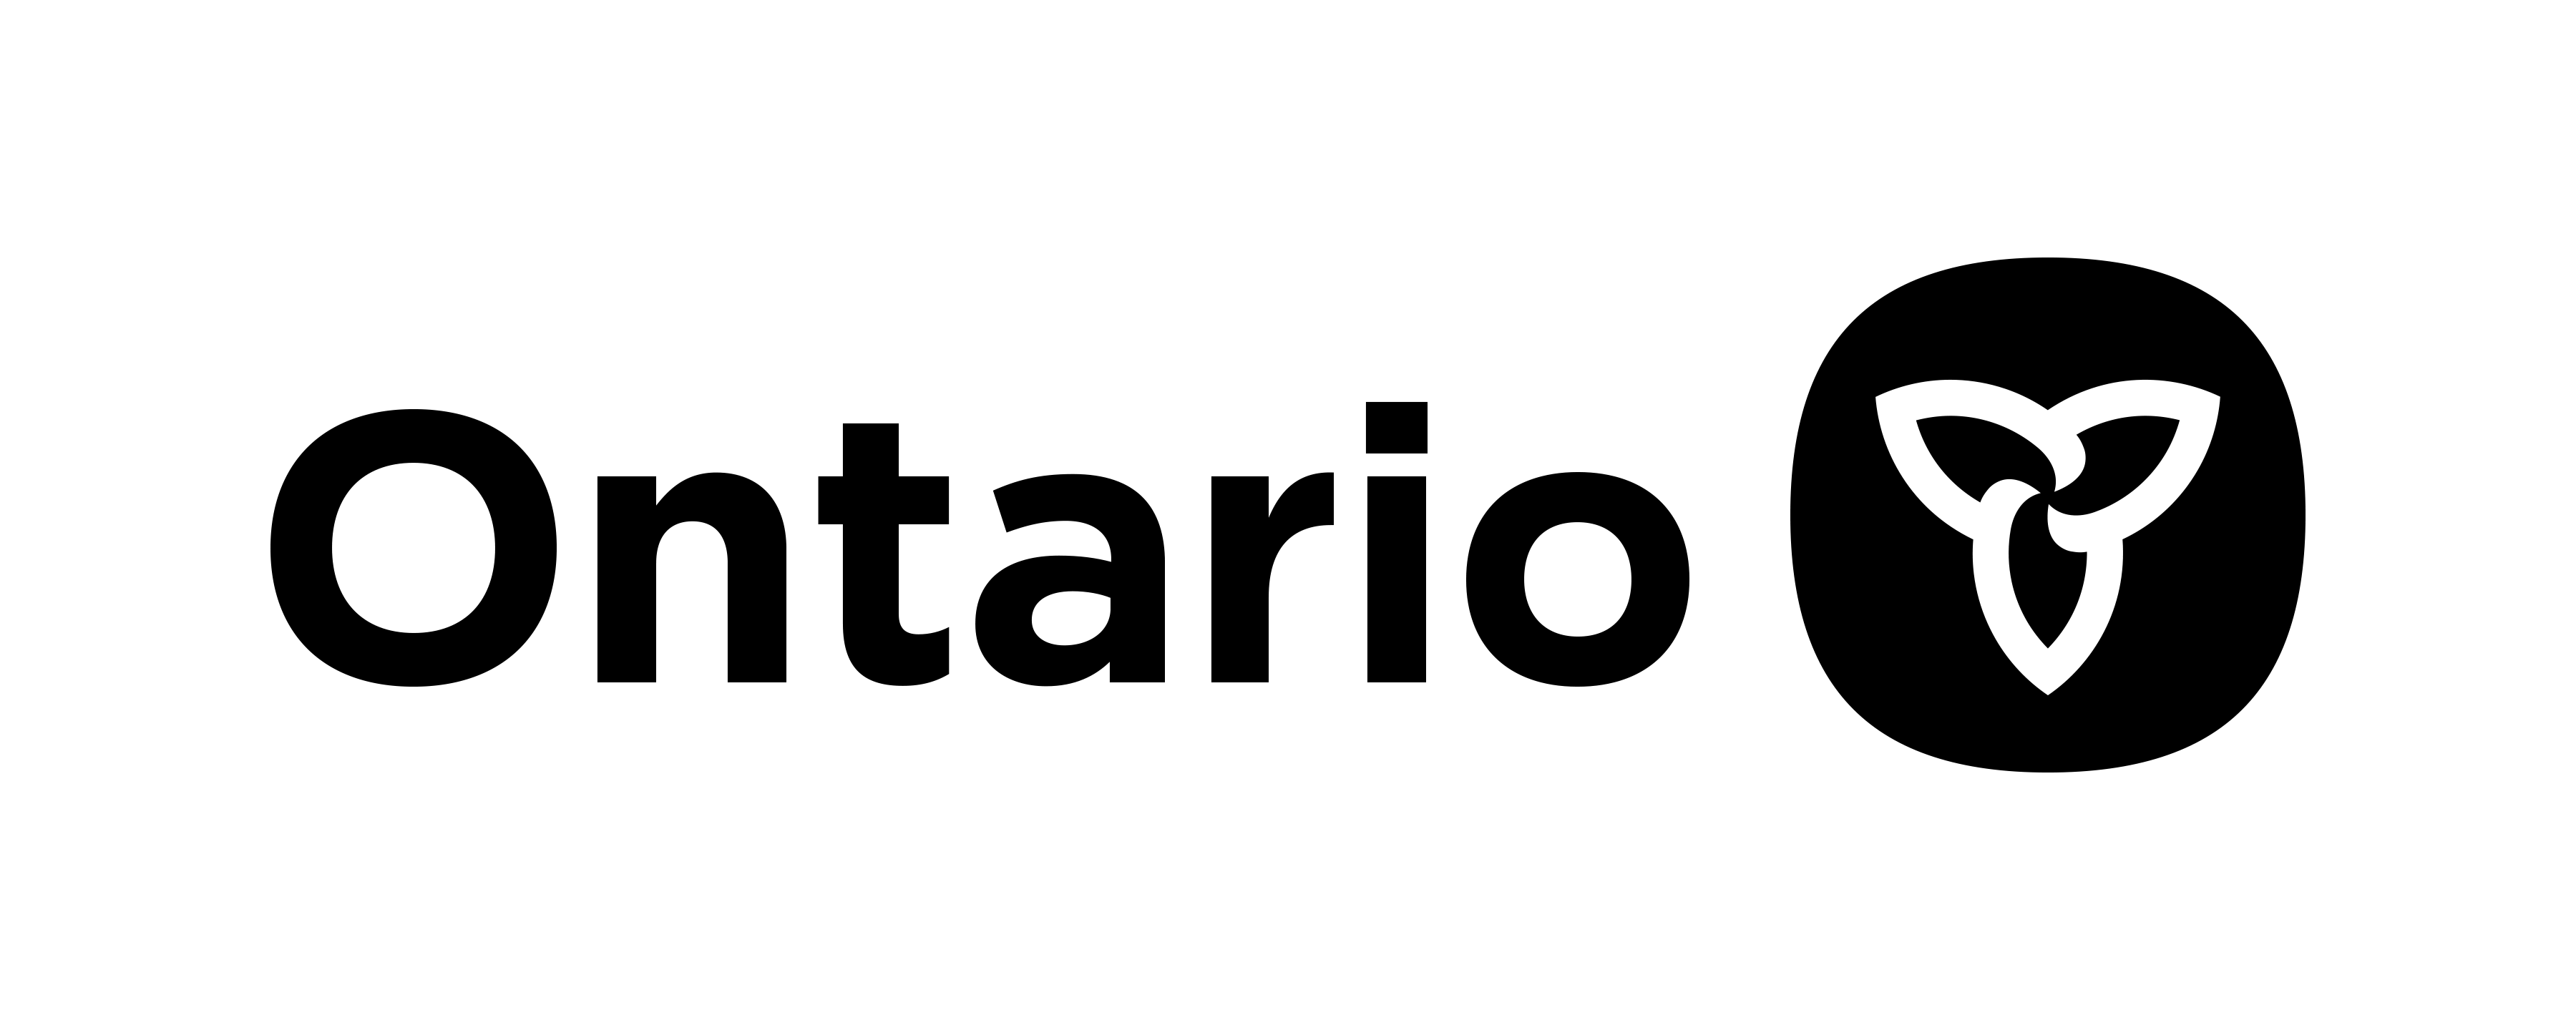 Ontario MTO Logo